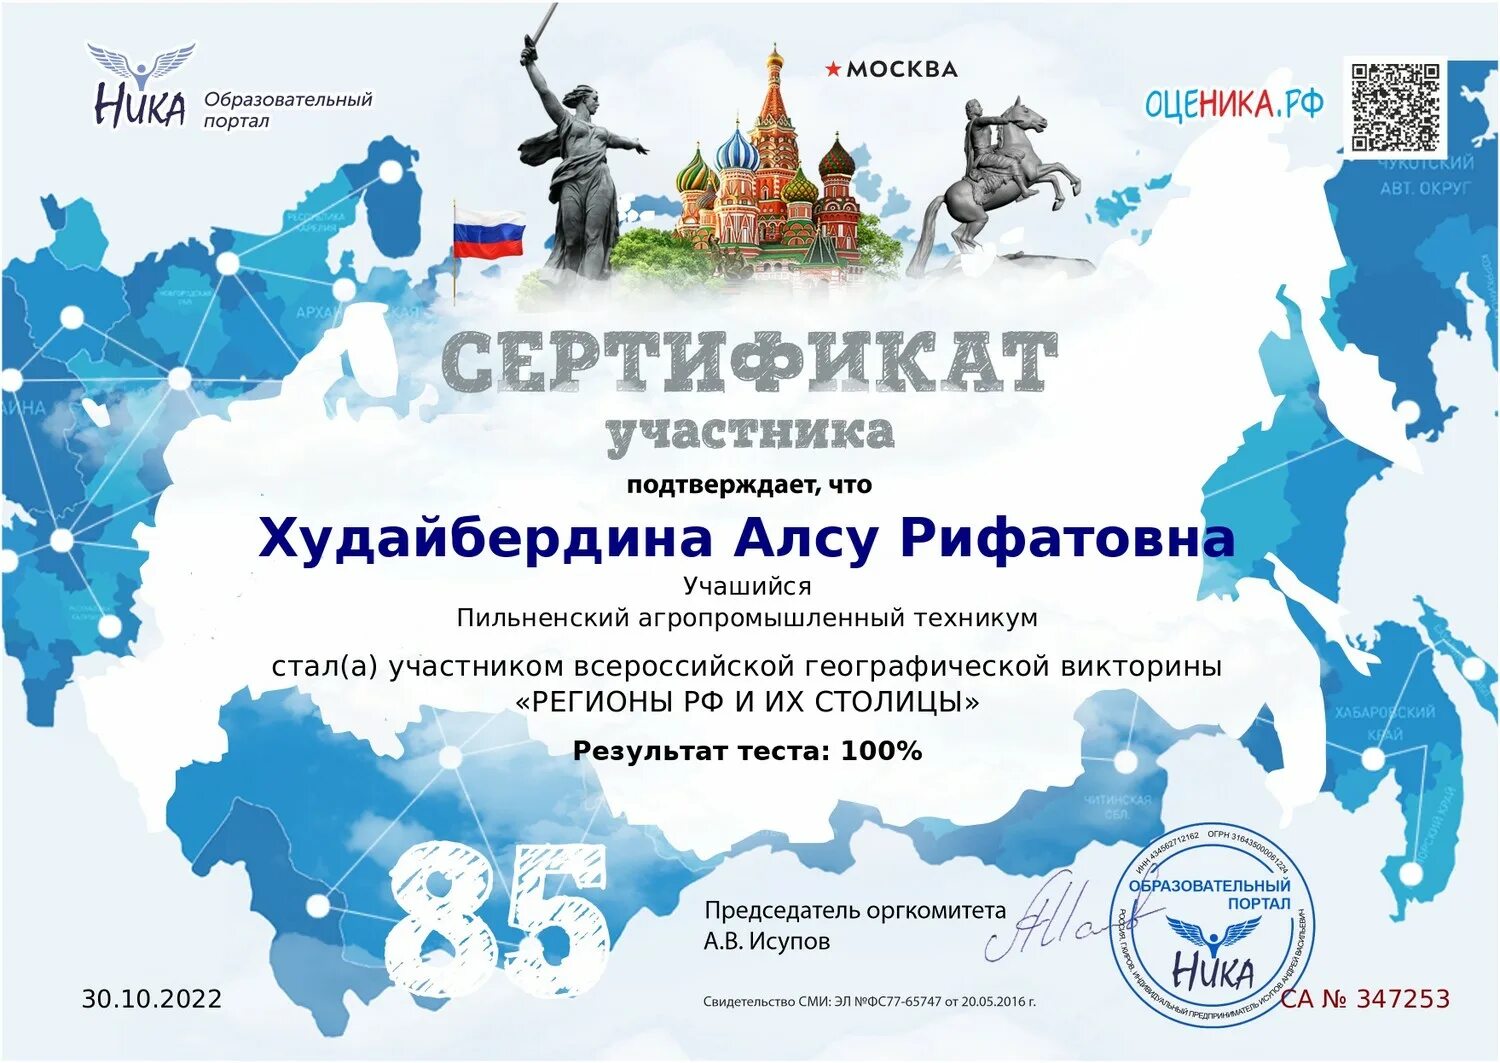 Всероссийская география